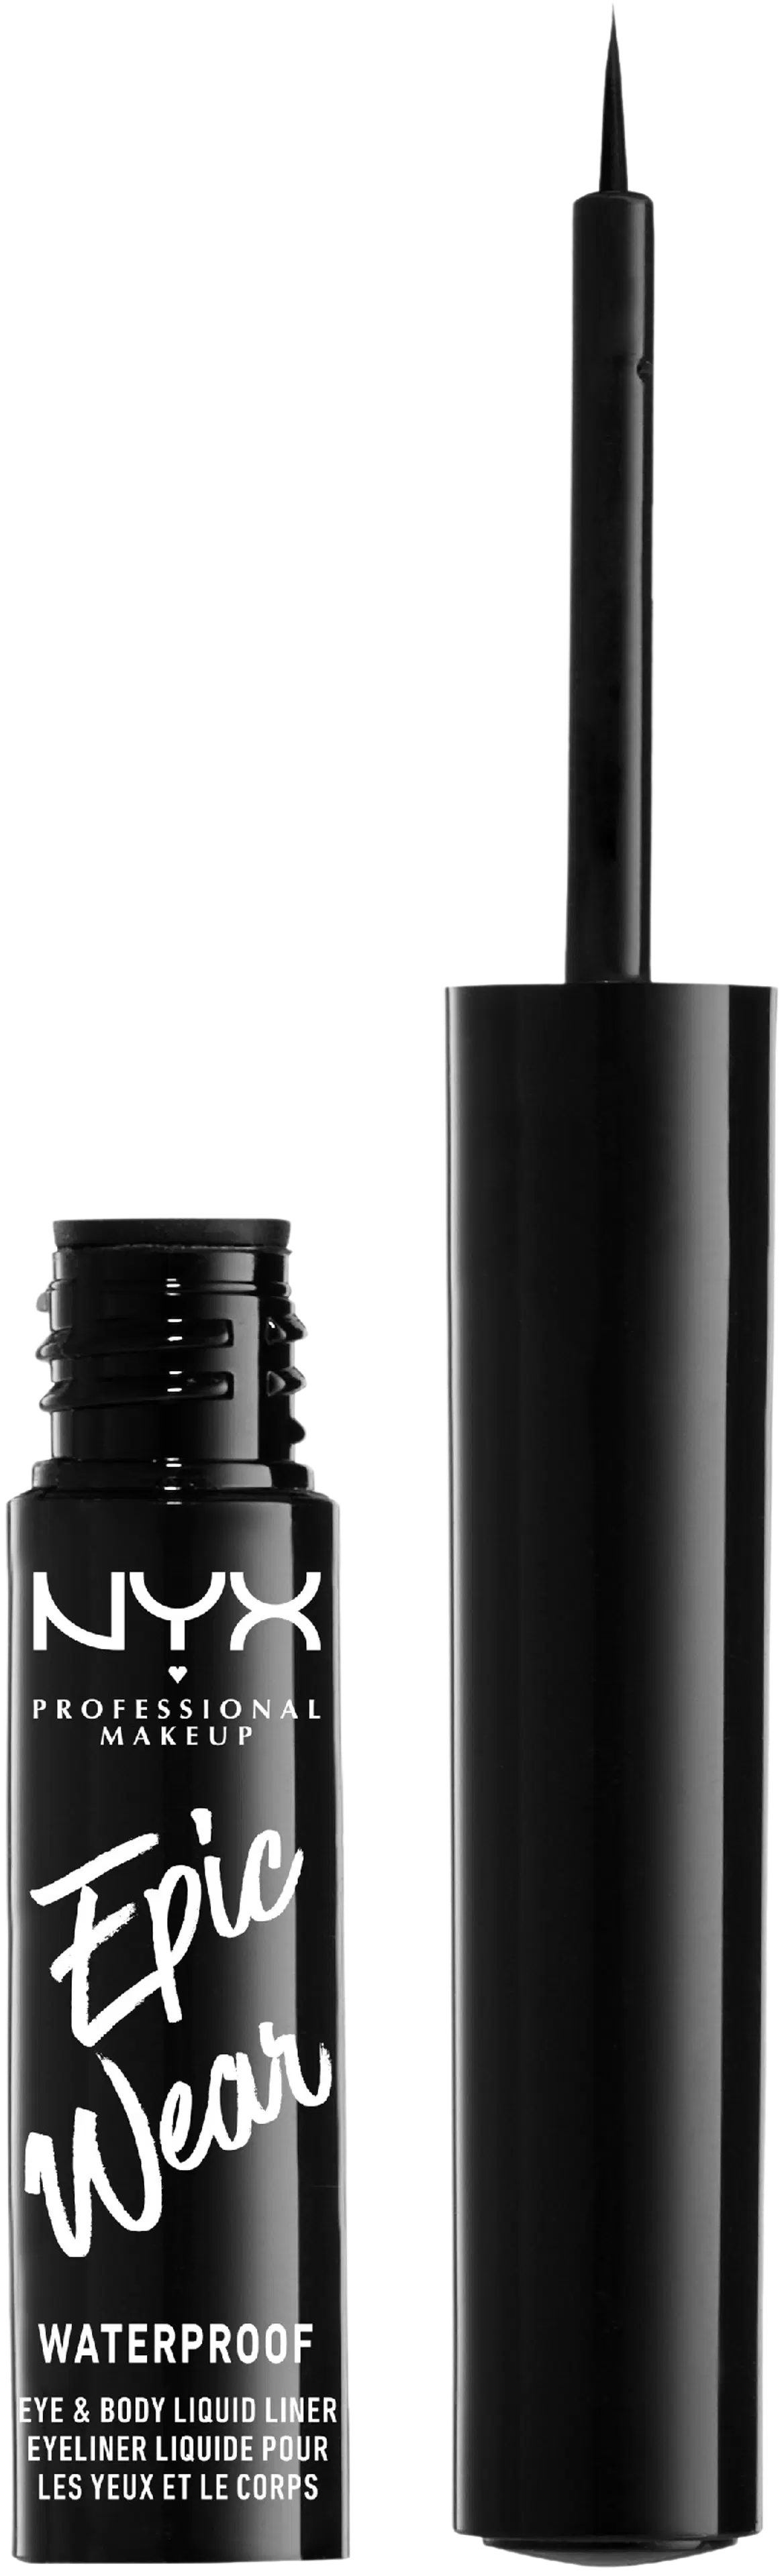 NYX Professional Makeup Epic Wear Semi Permanent Liquid Liner silmänrajauskynä 3,5 ml